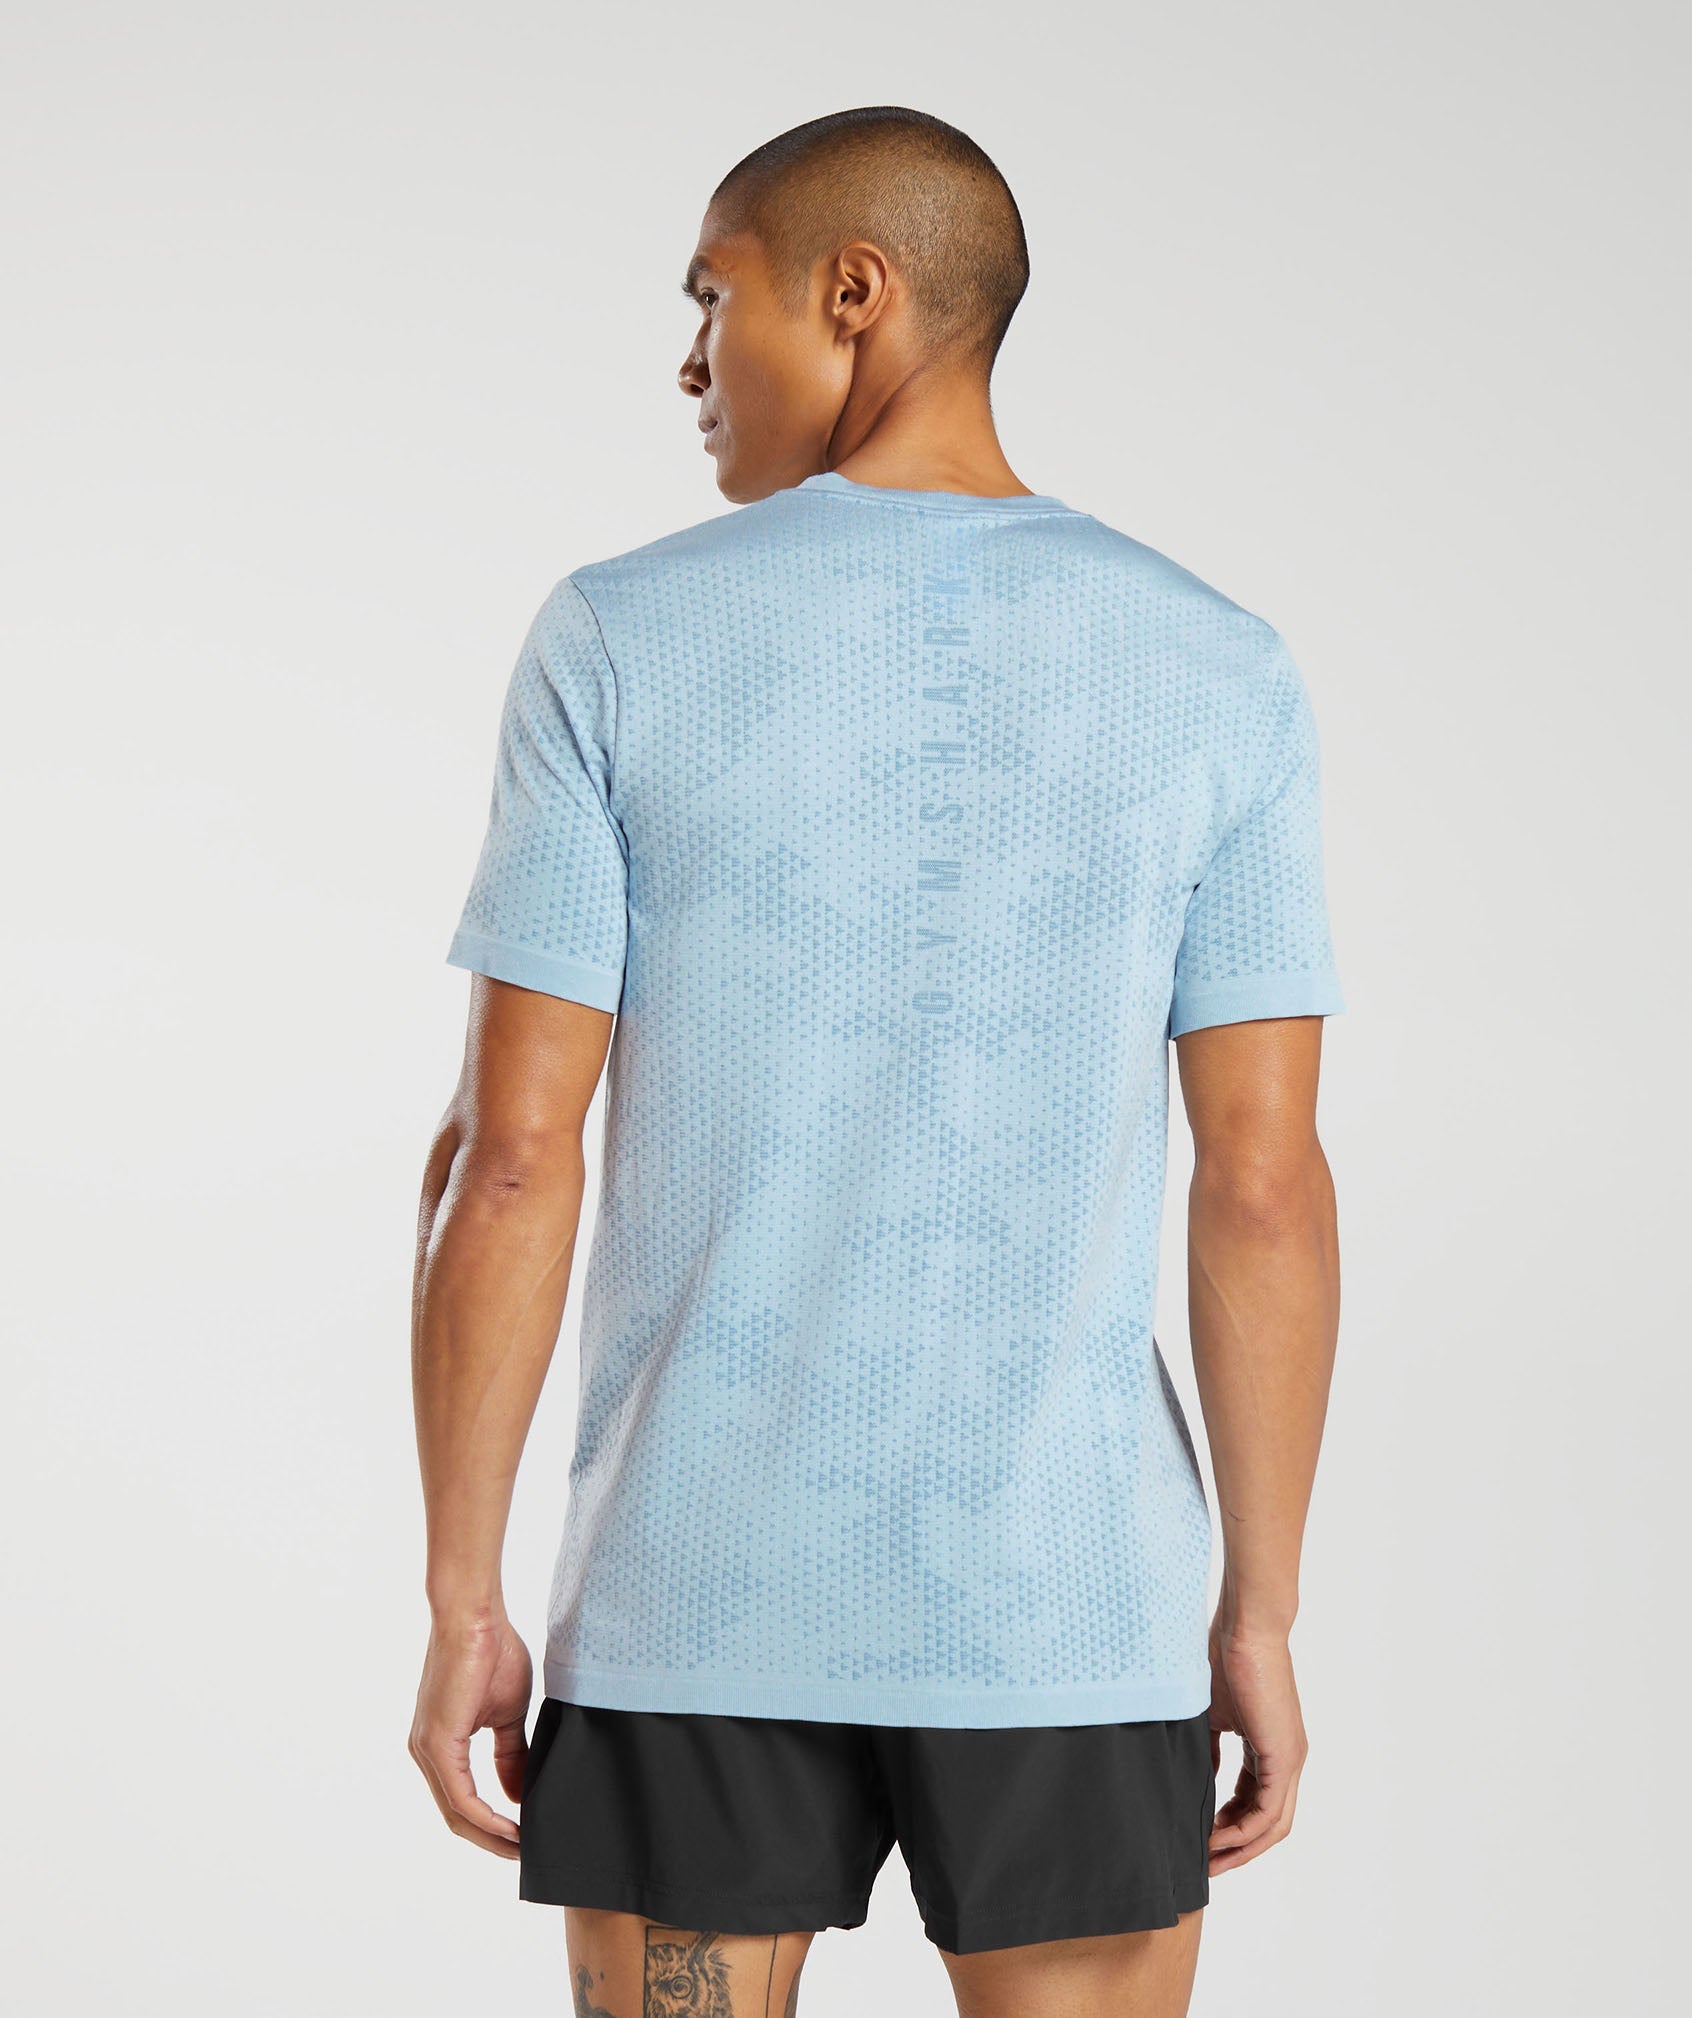 Gymshark Sport Seamless T-Shirt - Slate Blue/Winter Teal